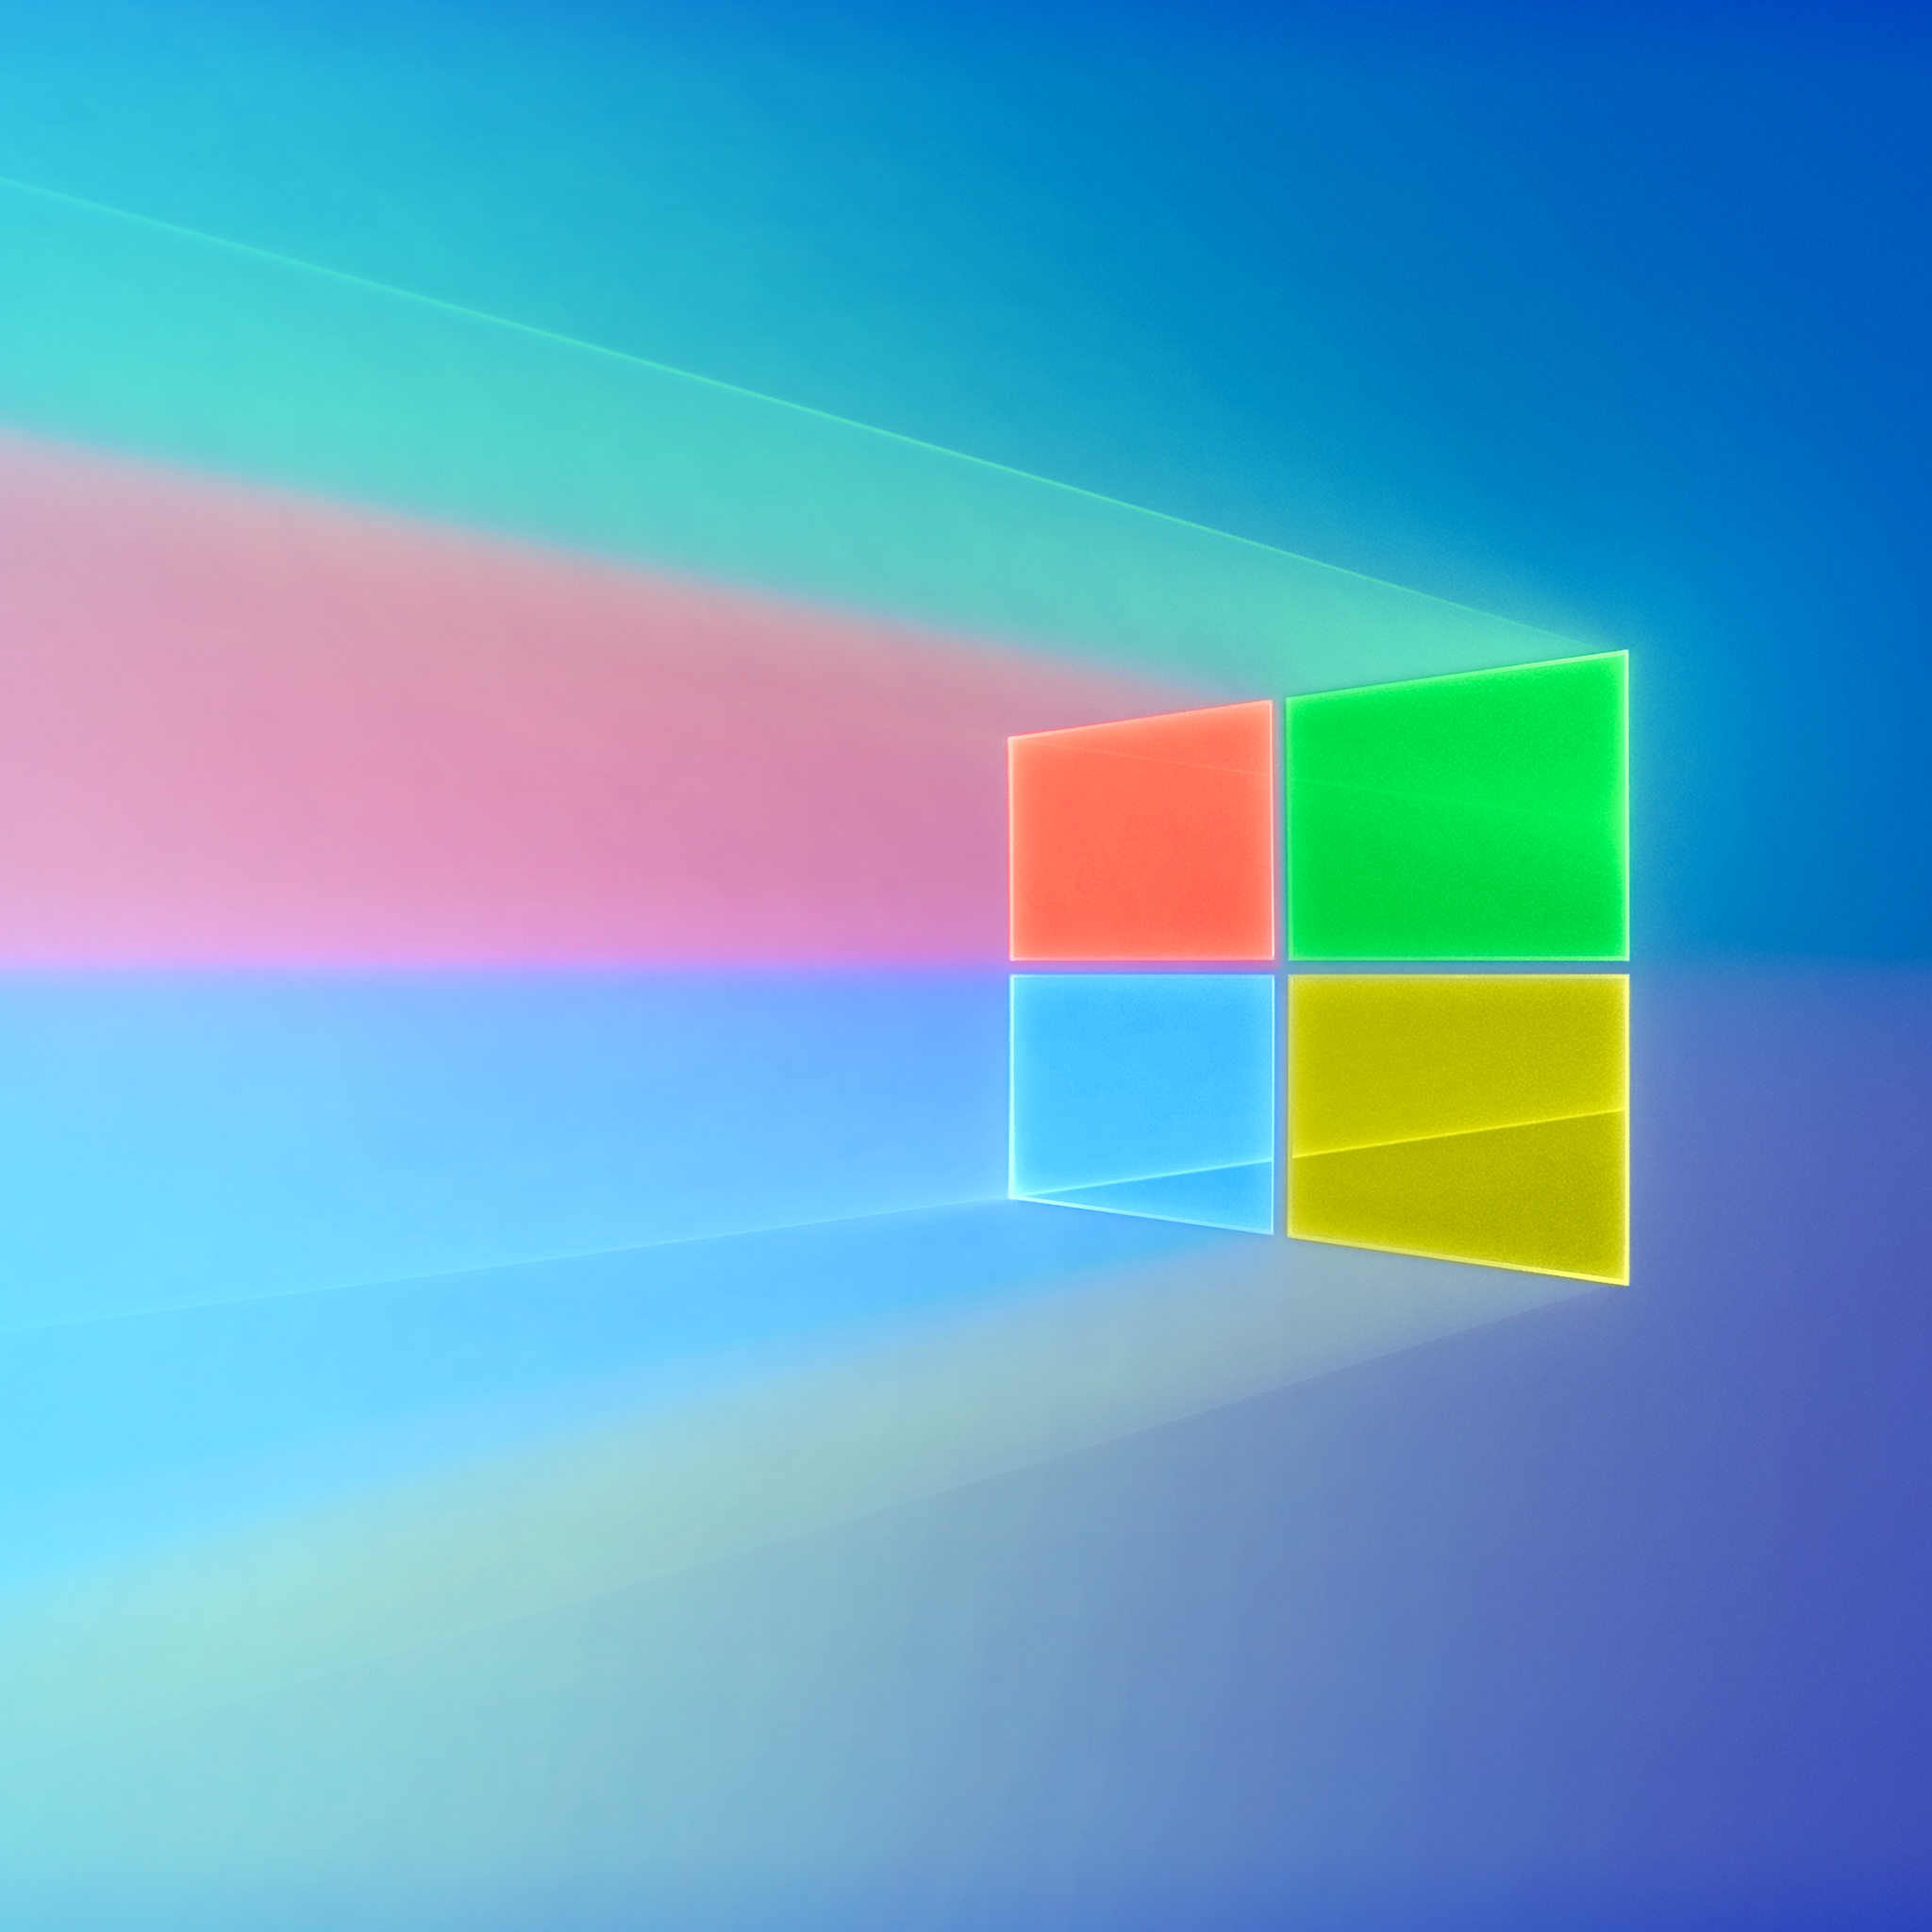 Hãy thưởng thức những trải nghiệm tuyệt vời với hình nền Windows 10 4K, trong đó sức mạnh của công nghệ là rất đáng kinh ngạc. Logo Windows và màu sắc tuyệt đẹp sẽ tạo ra một không gian làm việc đẳng cấp và chuyên nghiệp.